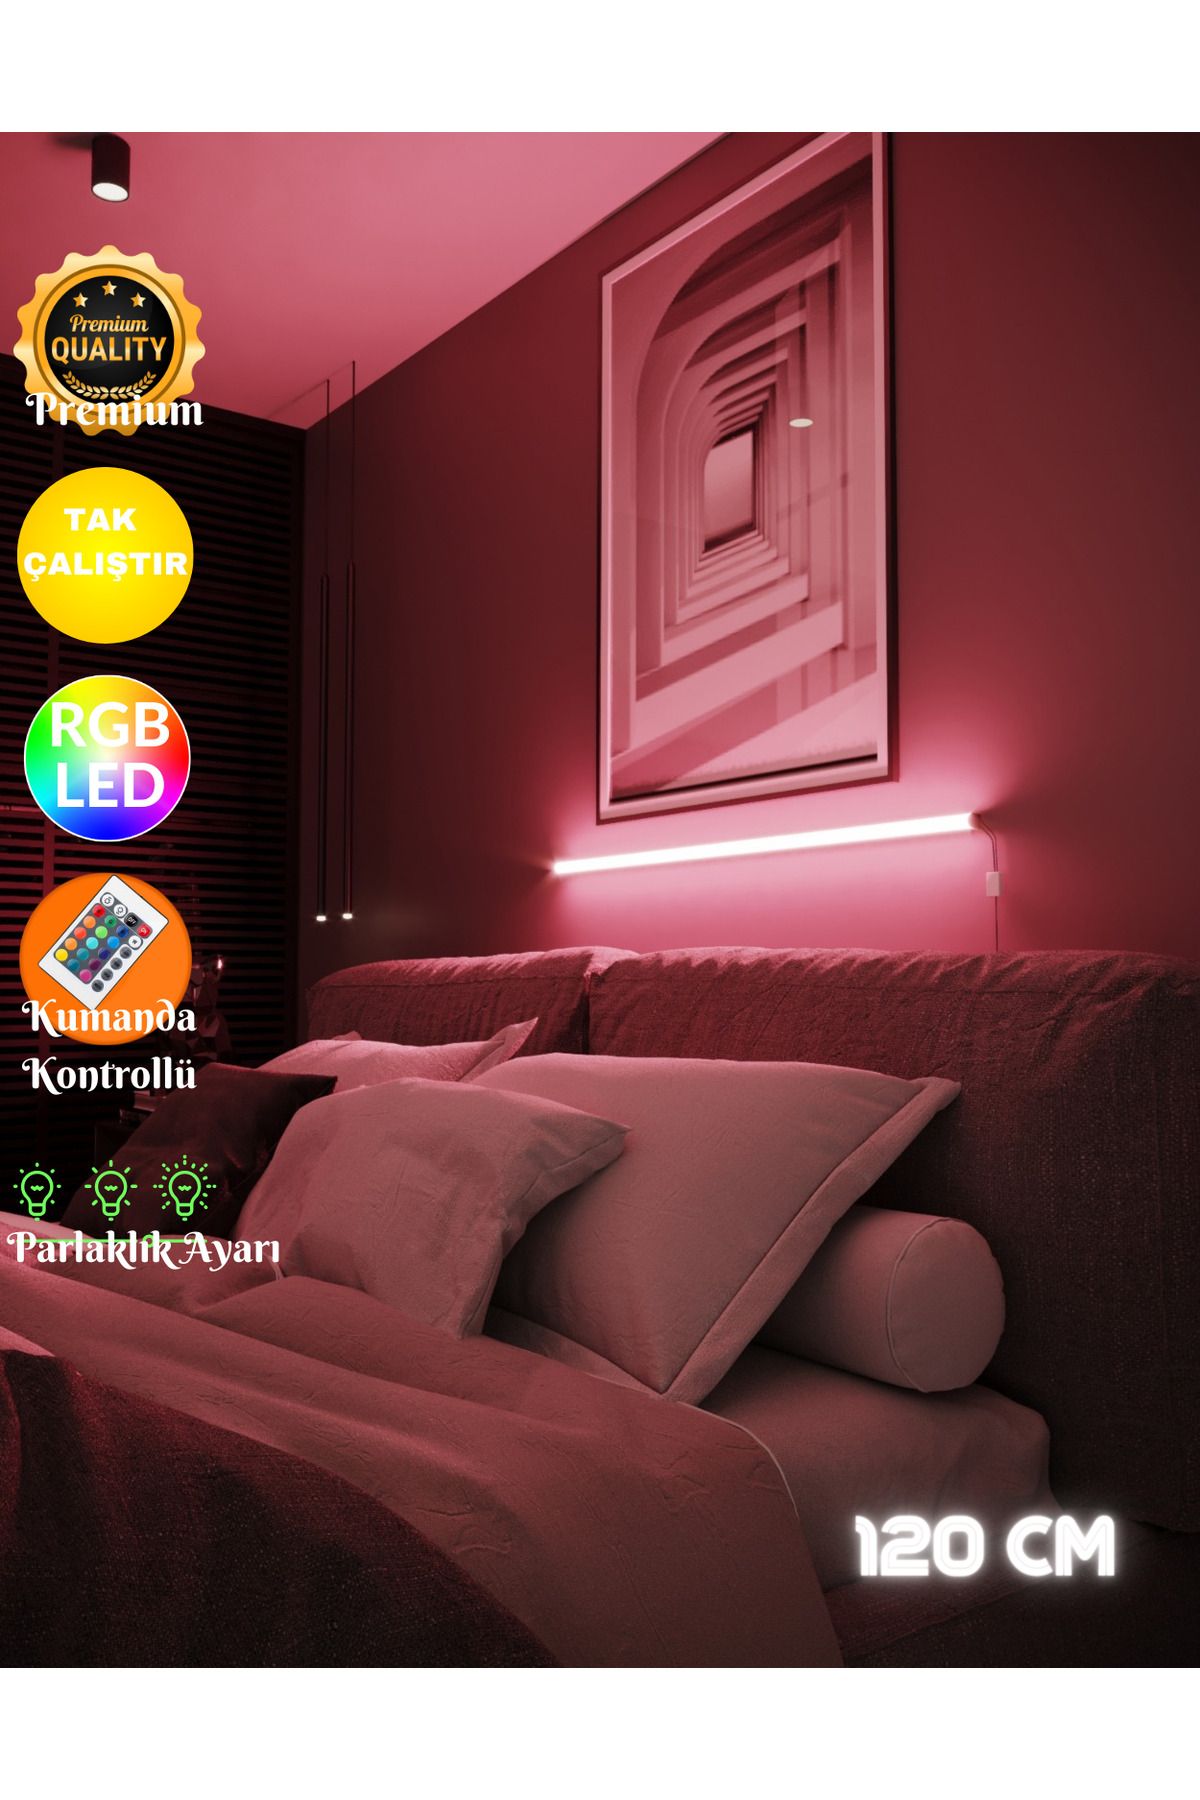 neeko Uzaktan Kumandalı Samsung Led Abajur Aplik Gece Lambası Kumandali - Rgb Model